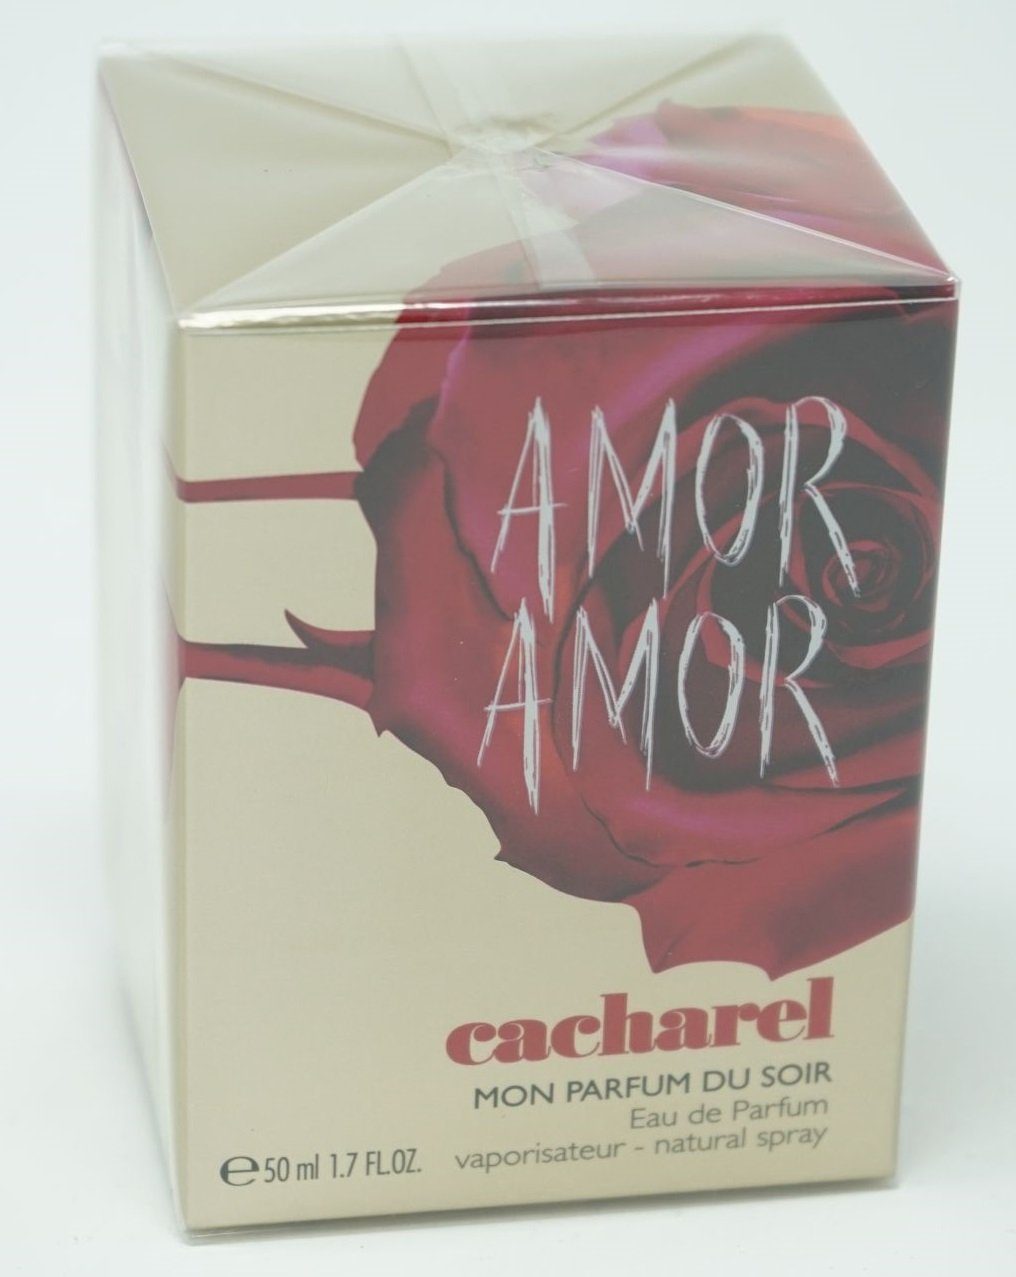 CACHAREL Eau de Parfum Cacharel Amor Amor Mon Parfum du Soir Eau de Parfum Spray 50 ml